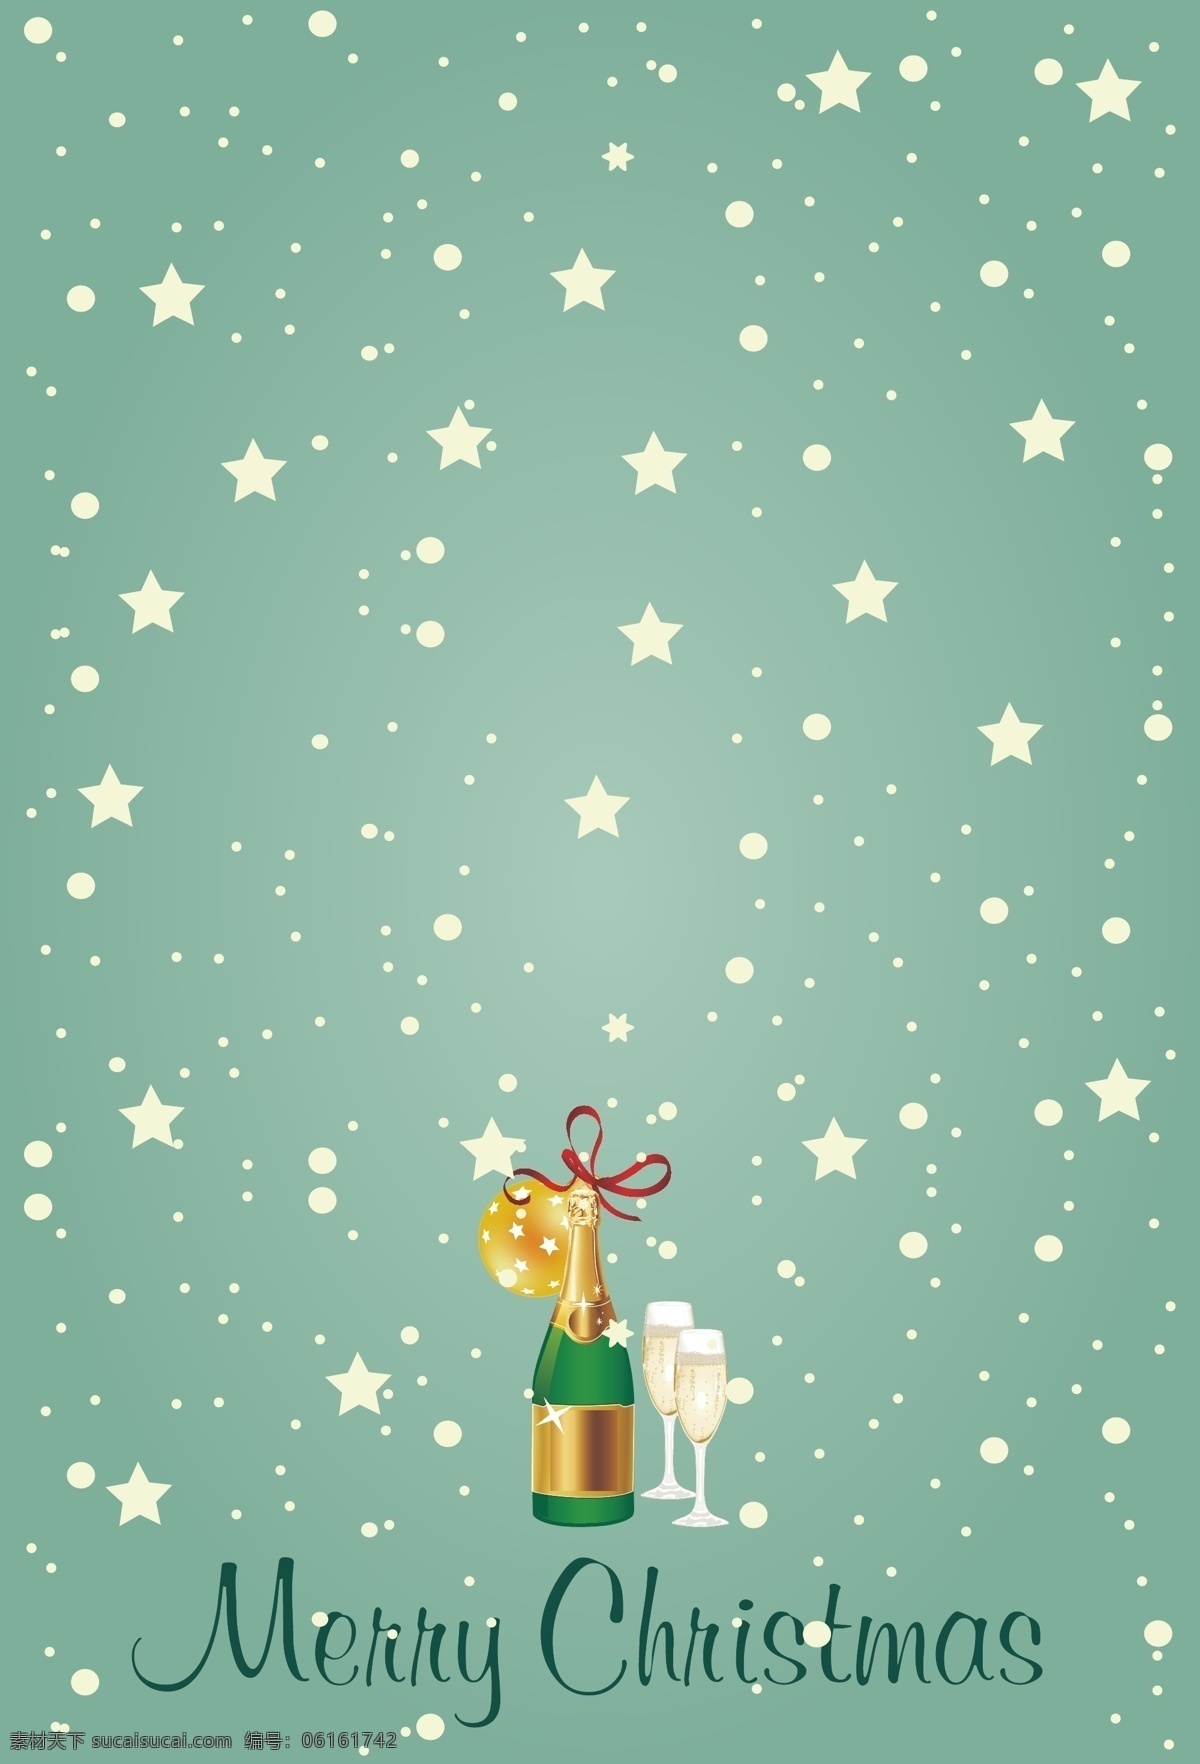 星星 啤酒 酒杯 绿豆 灰 圣诞 海报 背景 浪漫 梦幻 绿豆灰 矢量 幸福